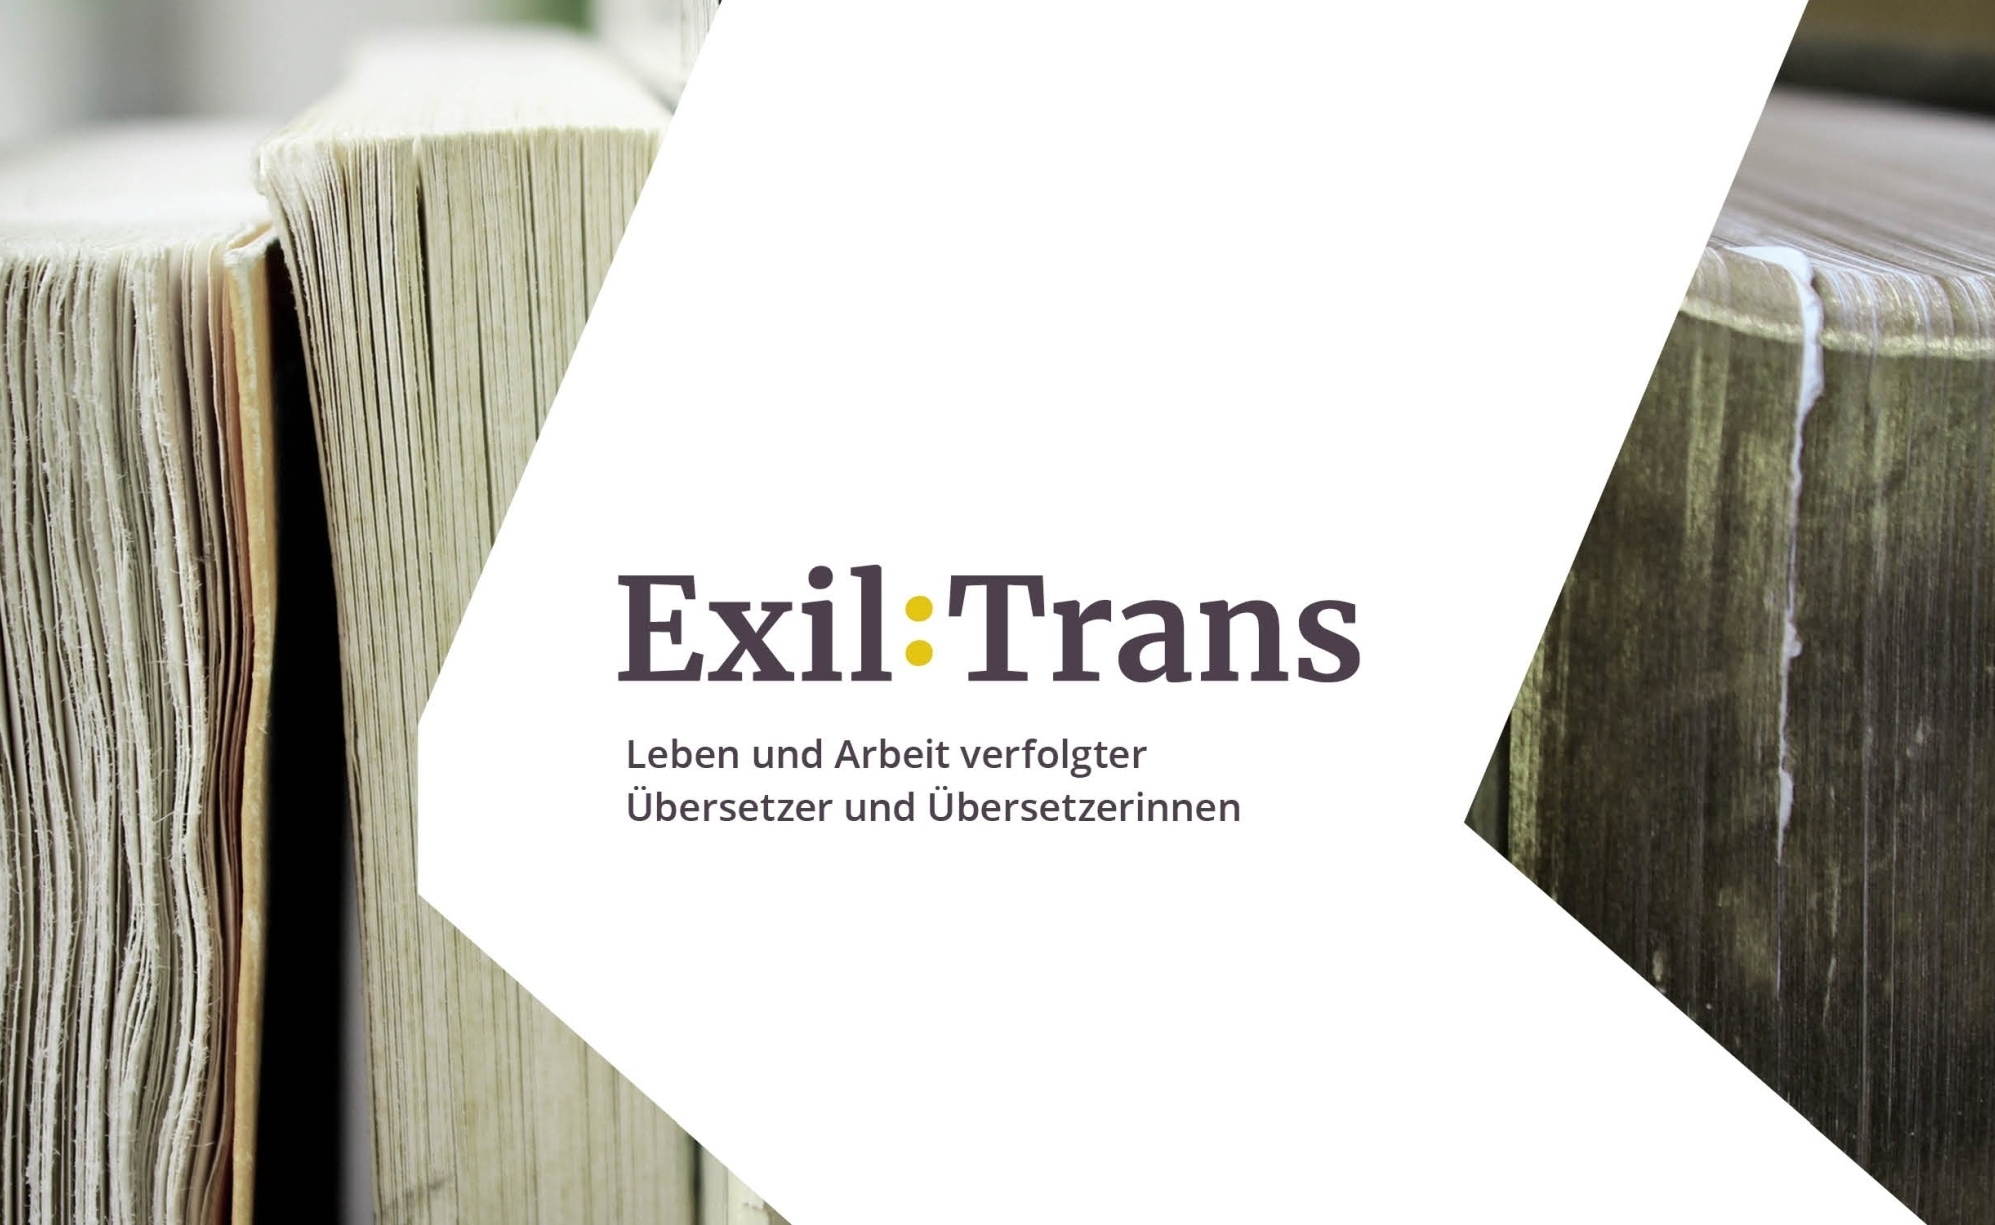 Exil:Trans